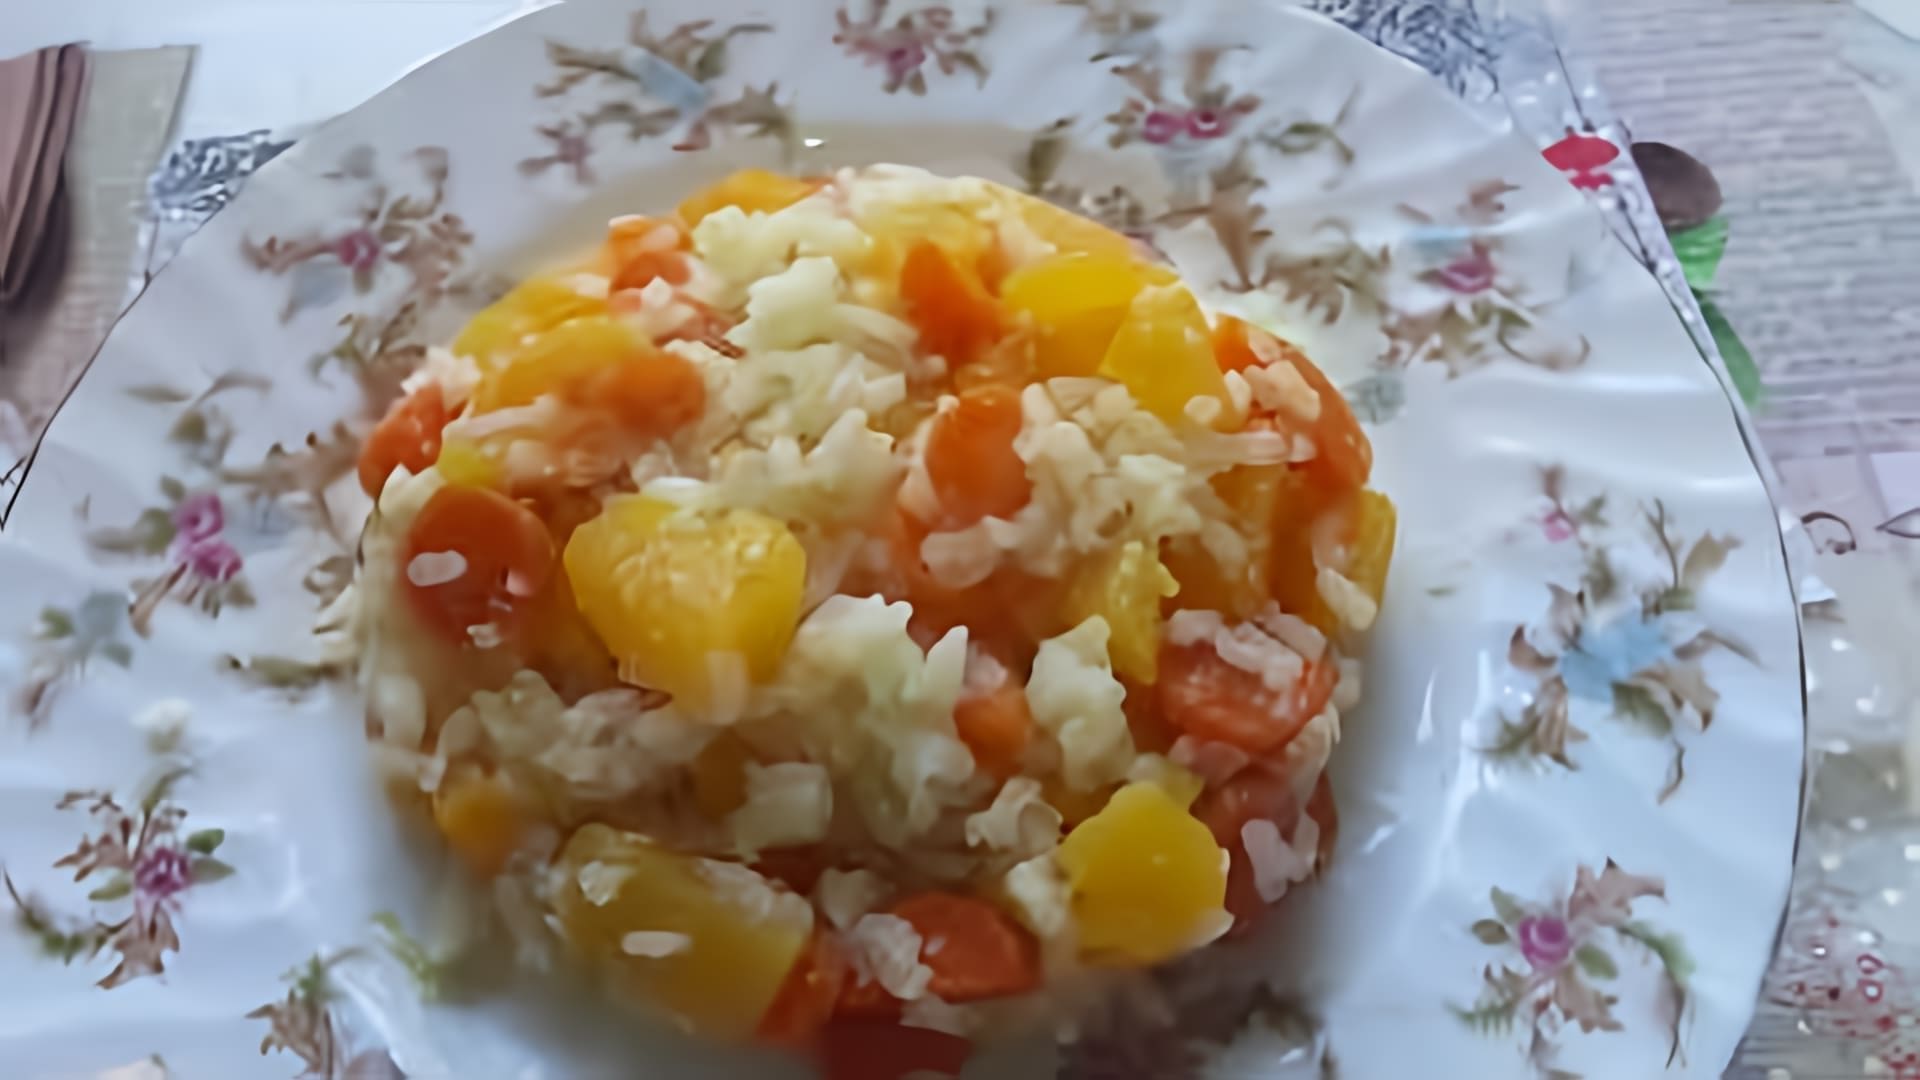 В этом видео демонстрируется рецепт диетического гарнира из риса с овощами